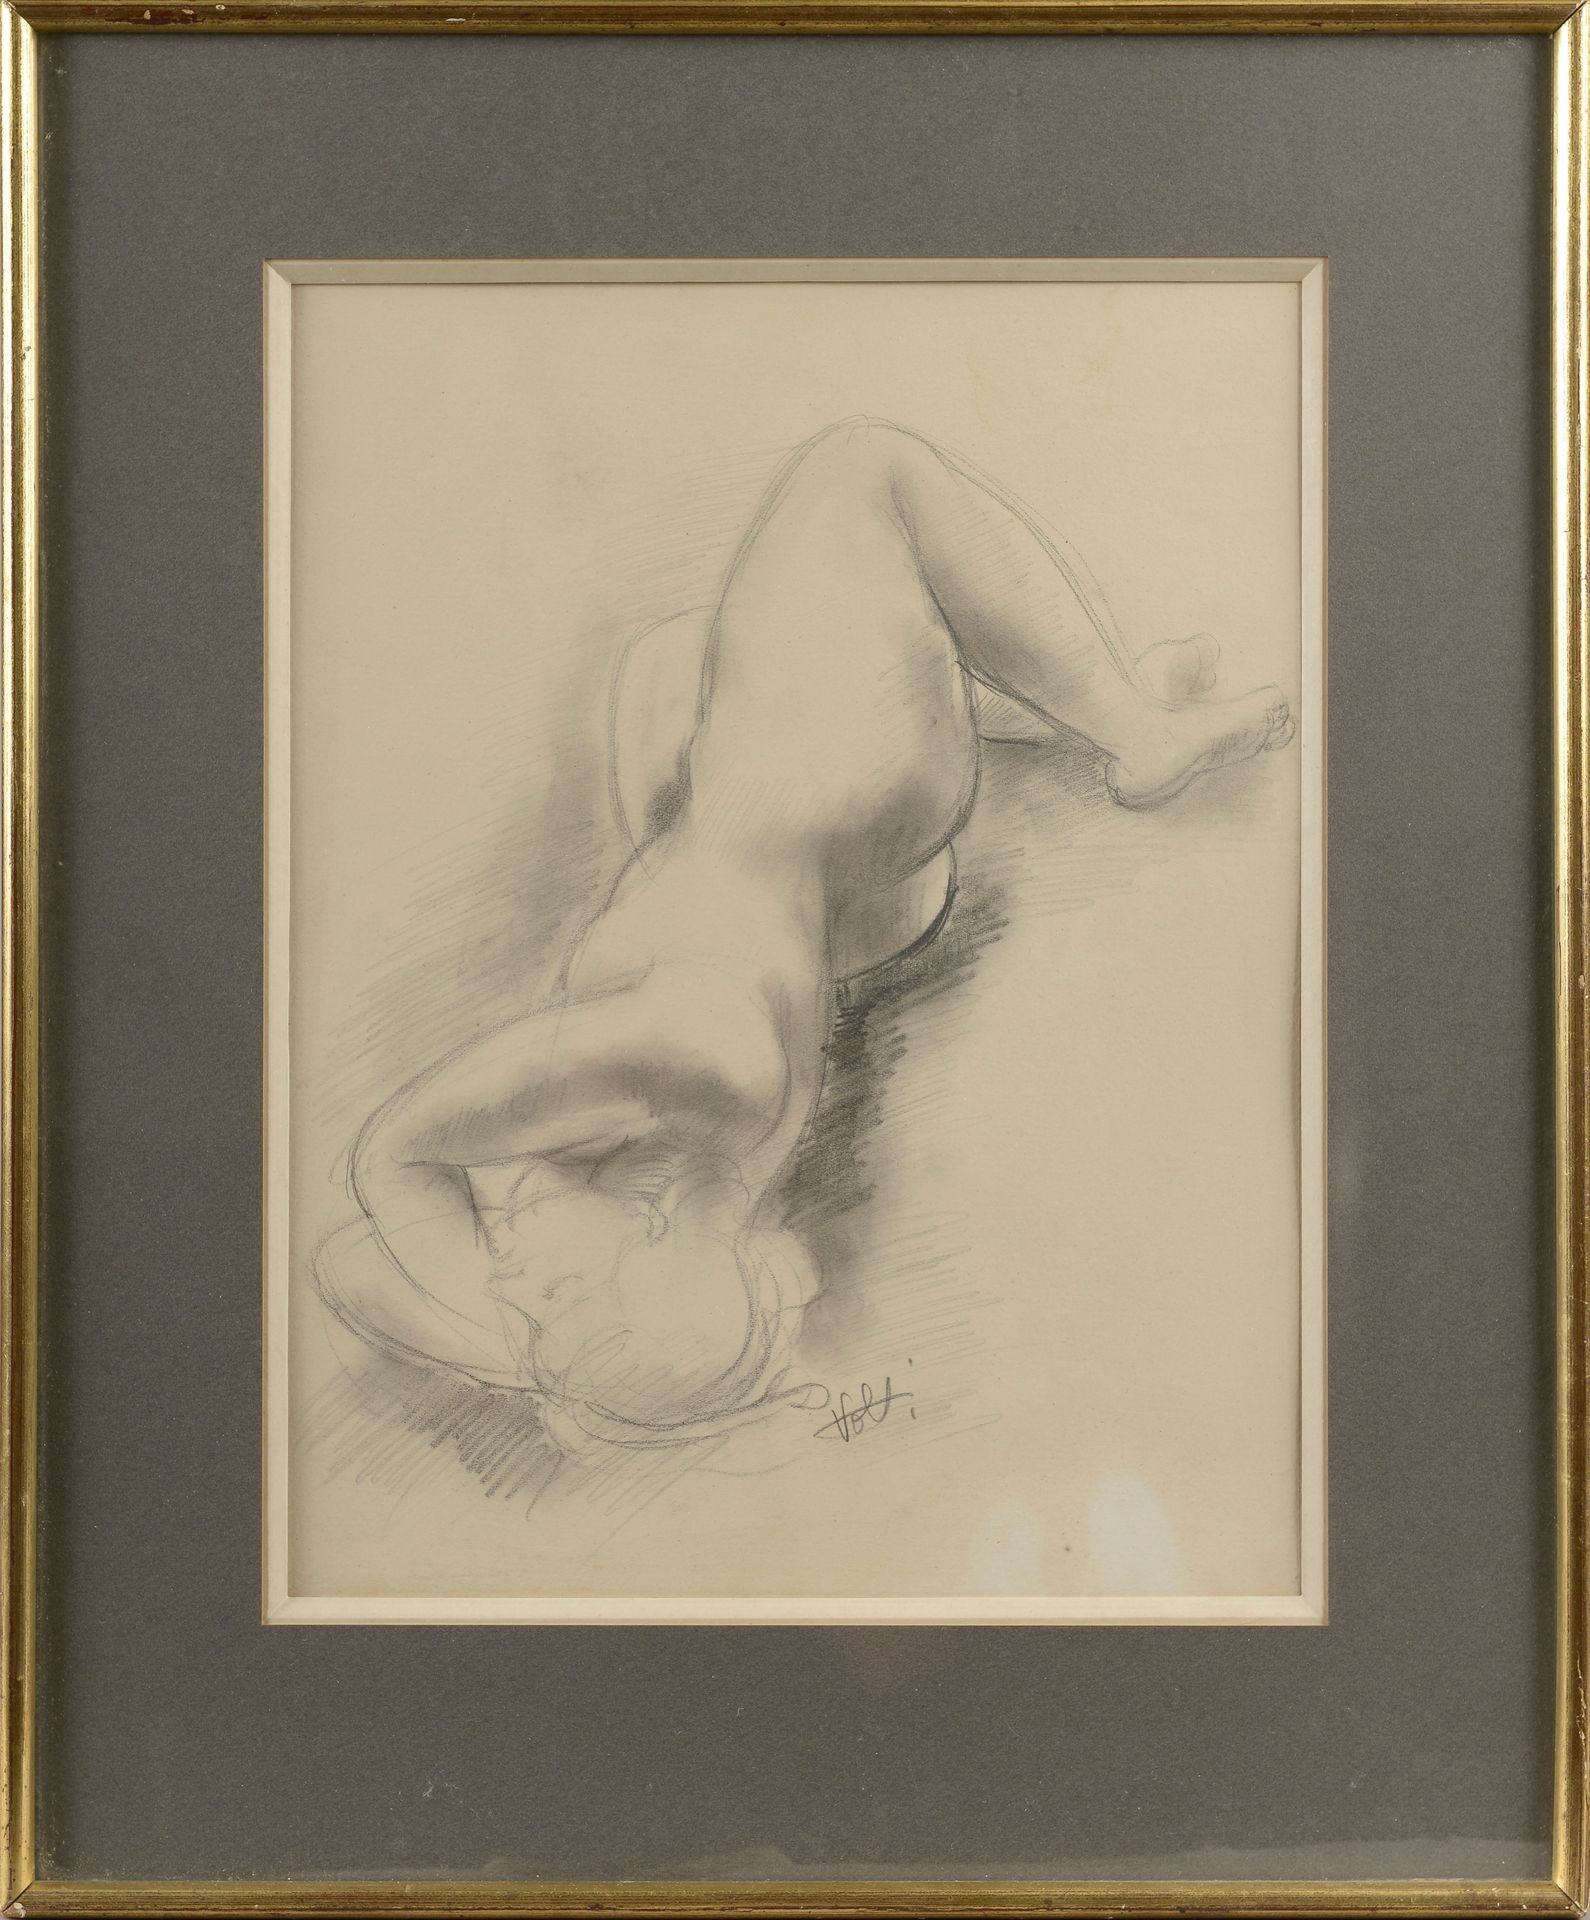 Null Antoniucci VOLTI (1915-1989).

Nudo femminile addormentato.

Disegno a mati&hellip;